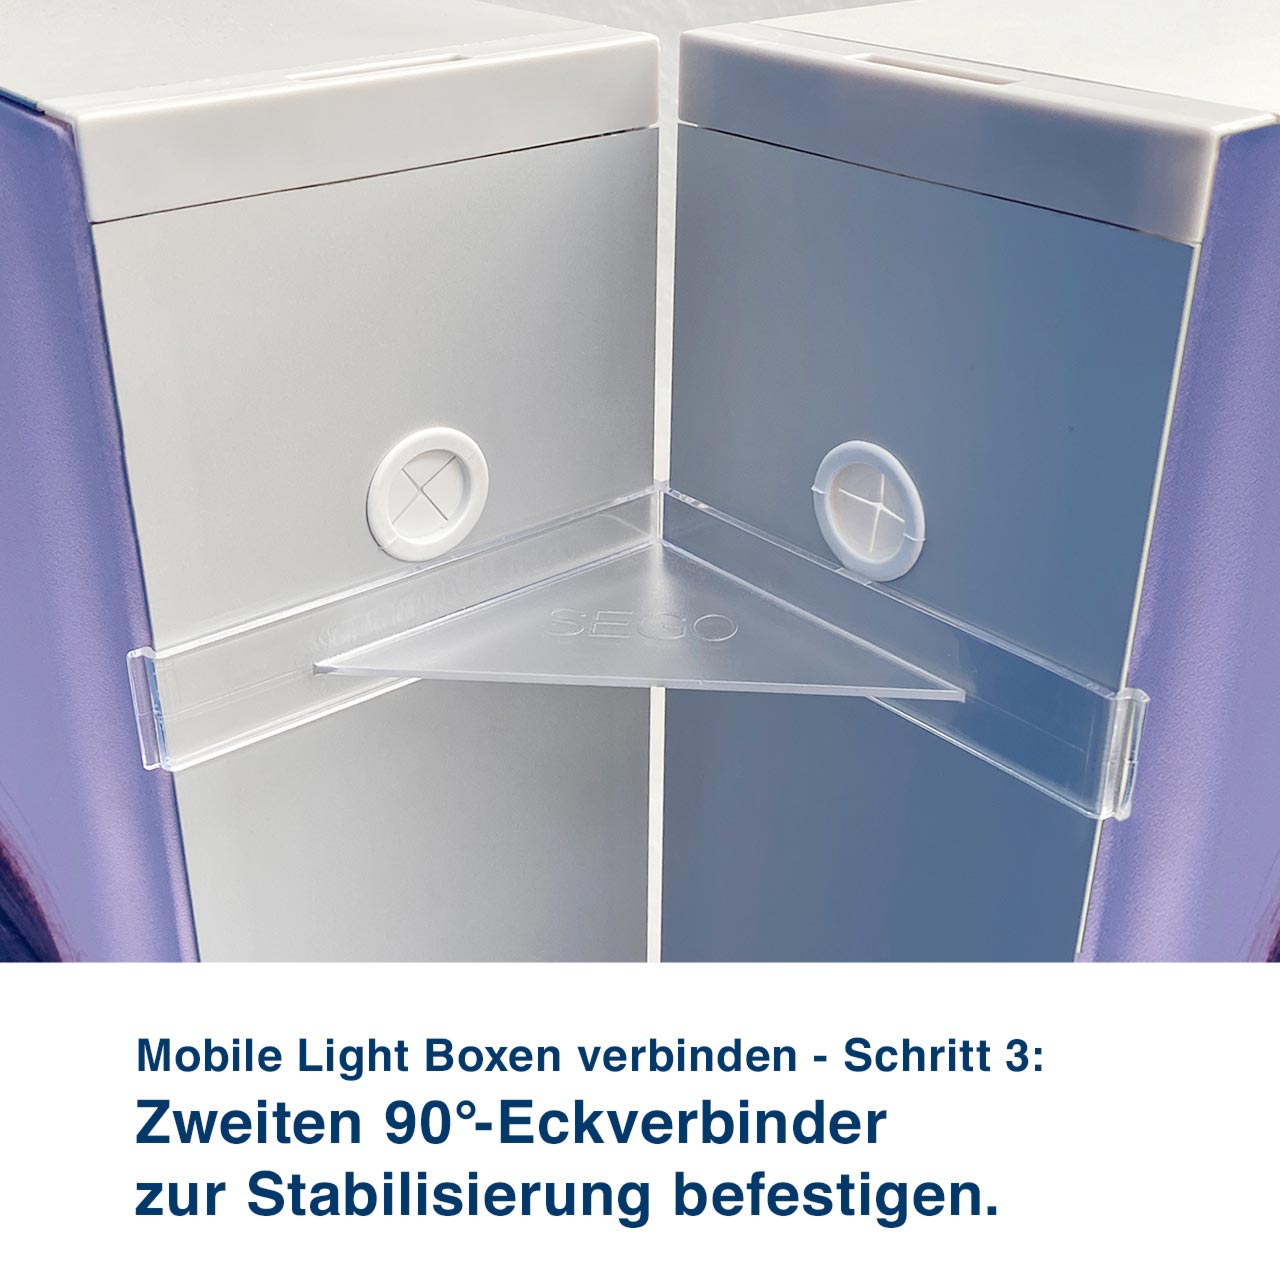 Mobile Light Boxen verbinden - Schritt 3:  Zweiten 90°-Eckverbinder  zur Stabilisierung befestigen.